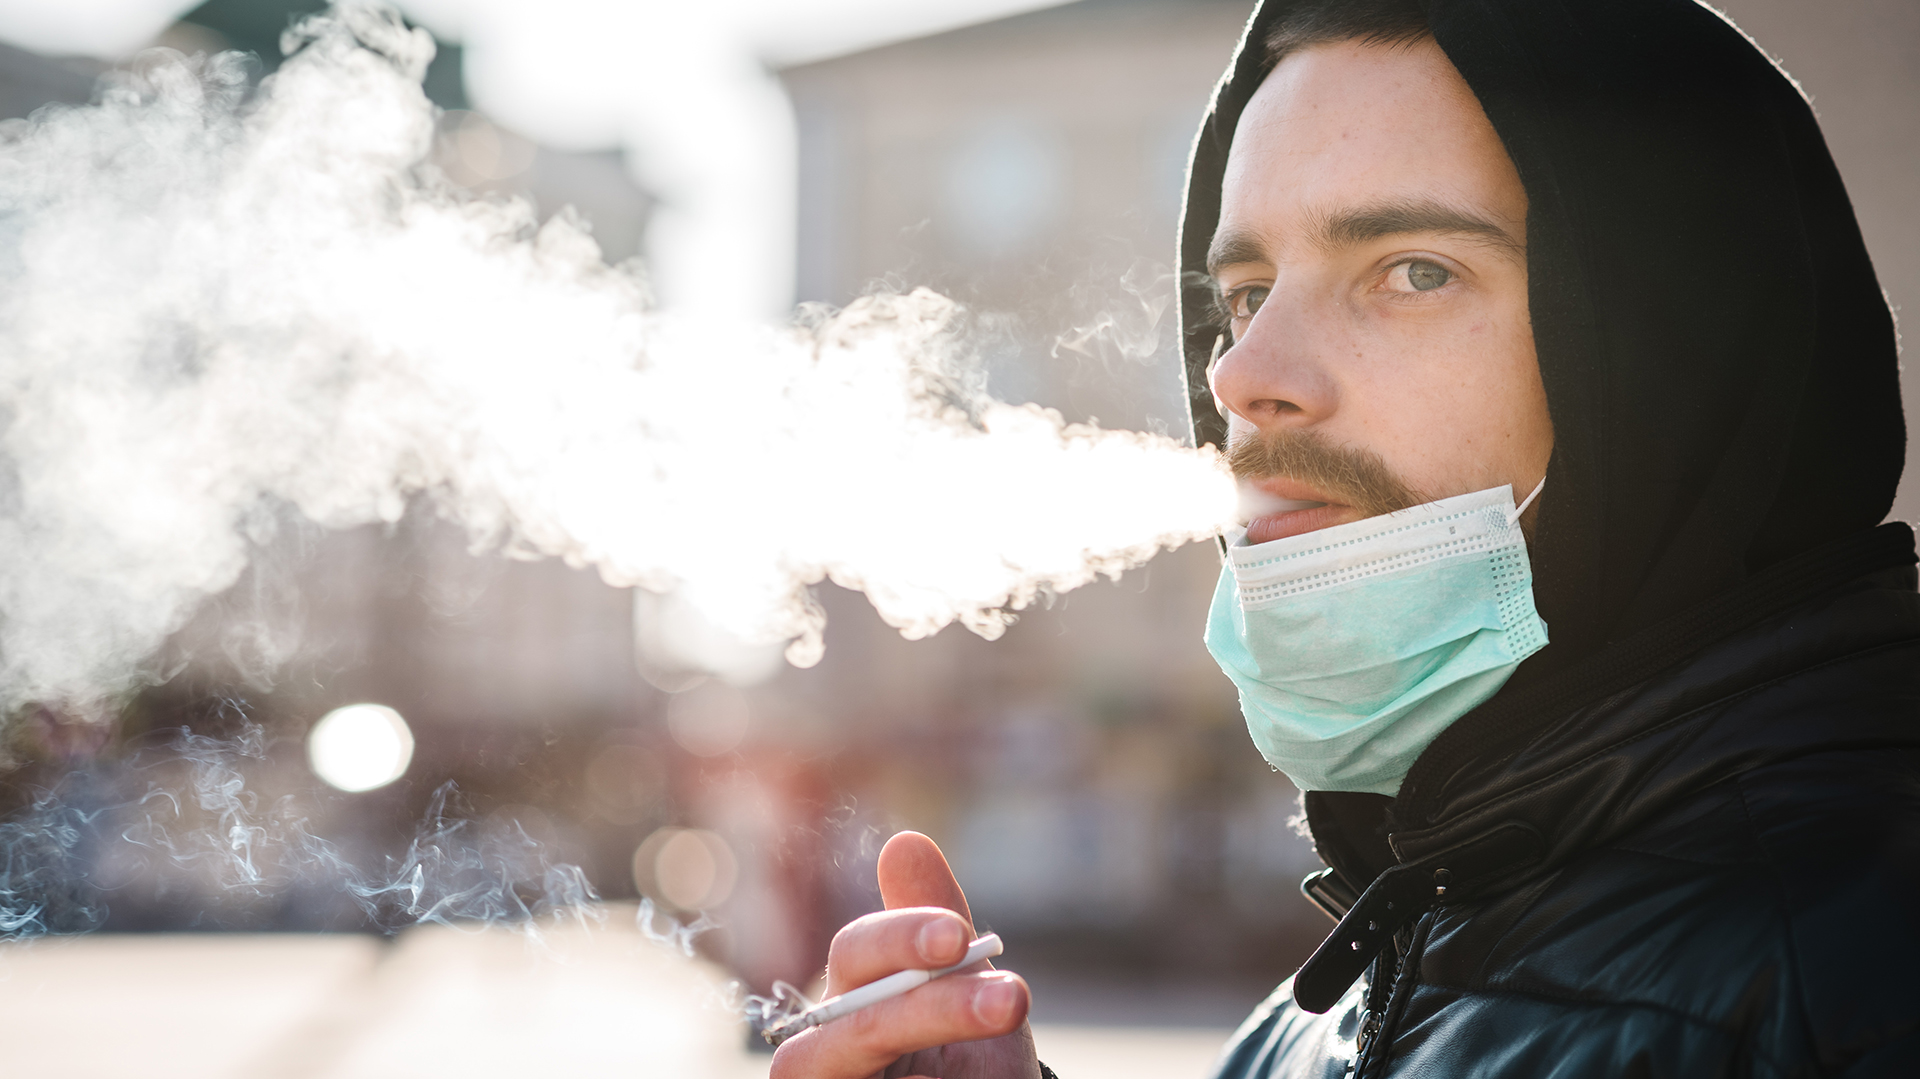 Las tabacaleras dejaron de producir el 20 de marzo, cuando el Gobierno anunció el aislamiento social obligatorio en todo el país (Shutterstock)